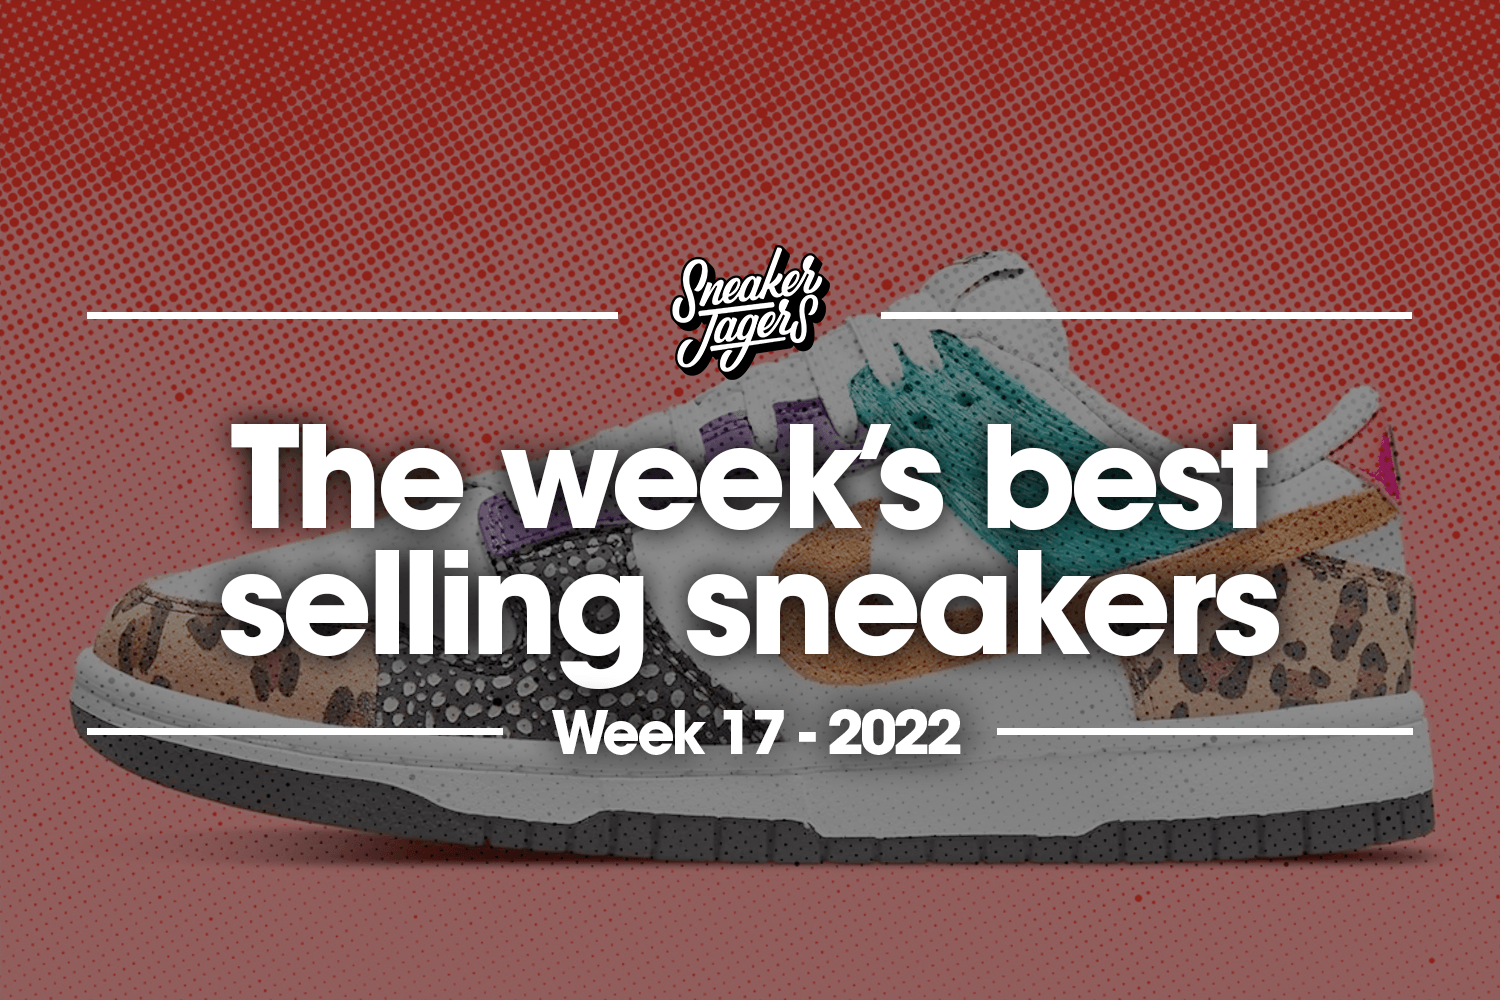 The 5 best selling sneakers of week 17